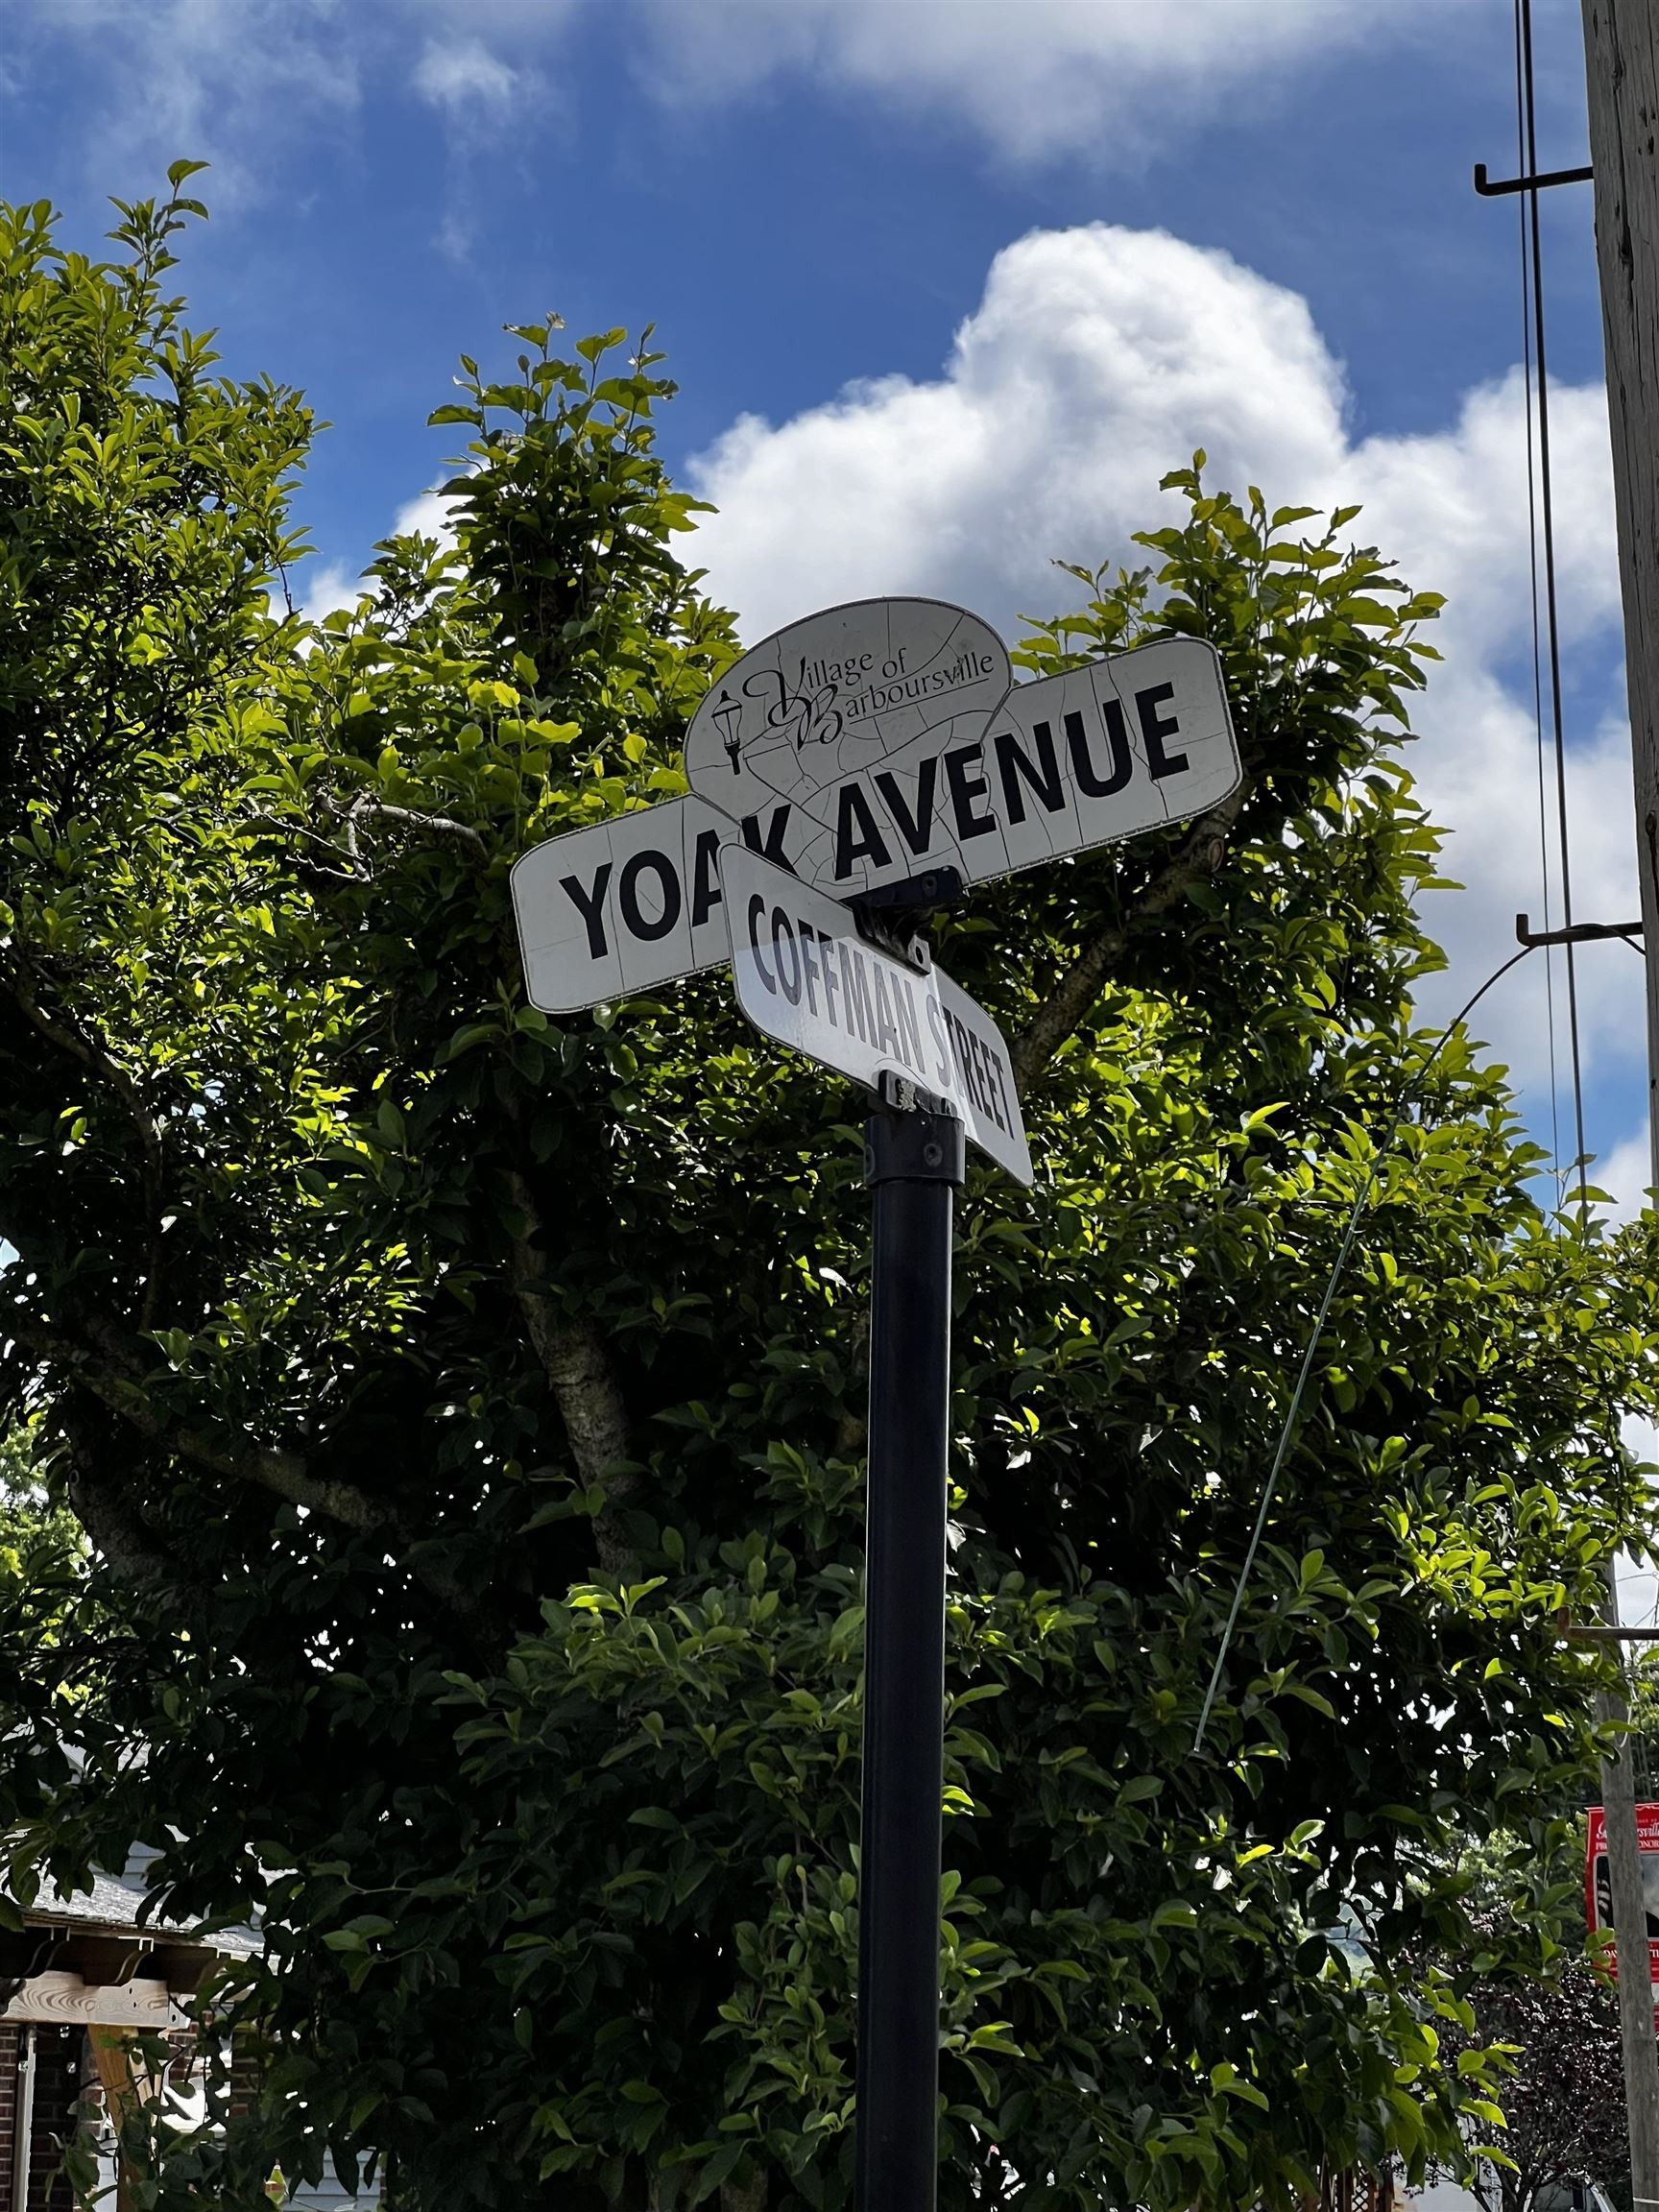 4. Yoak Avenue